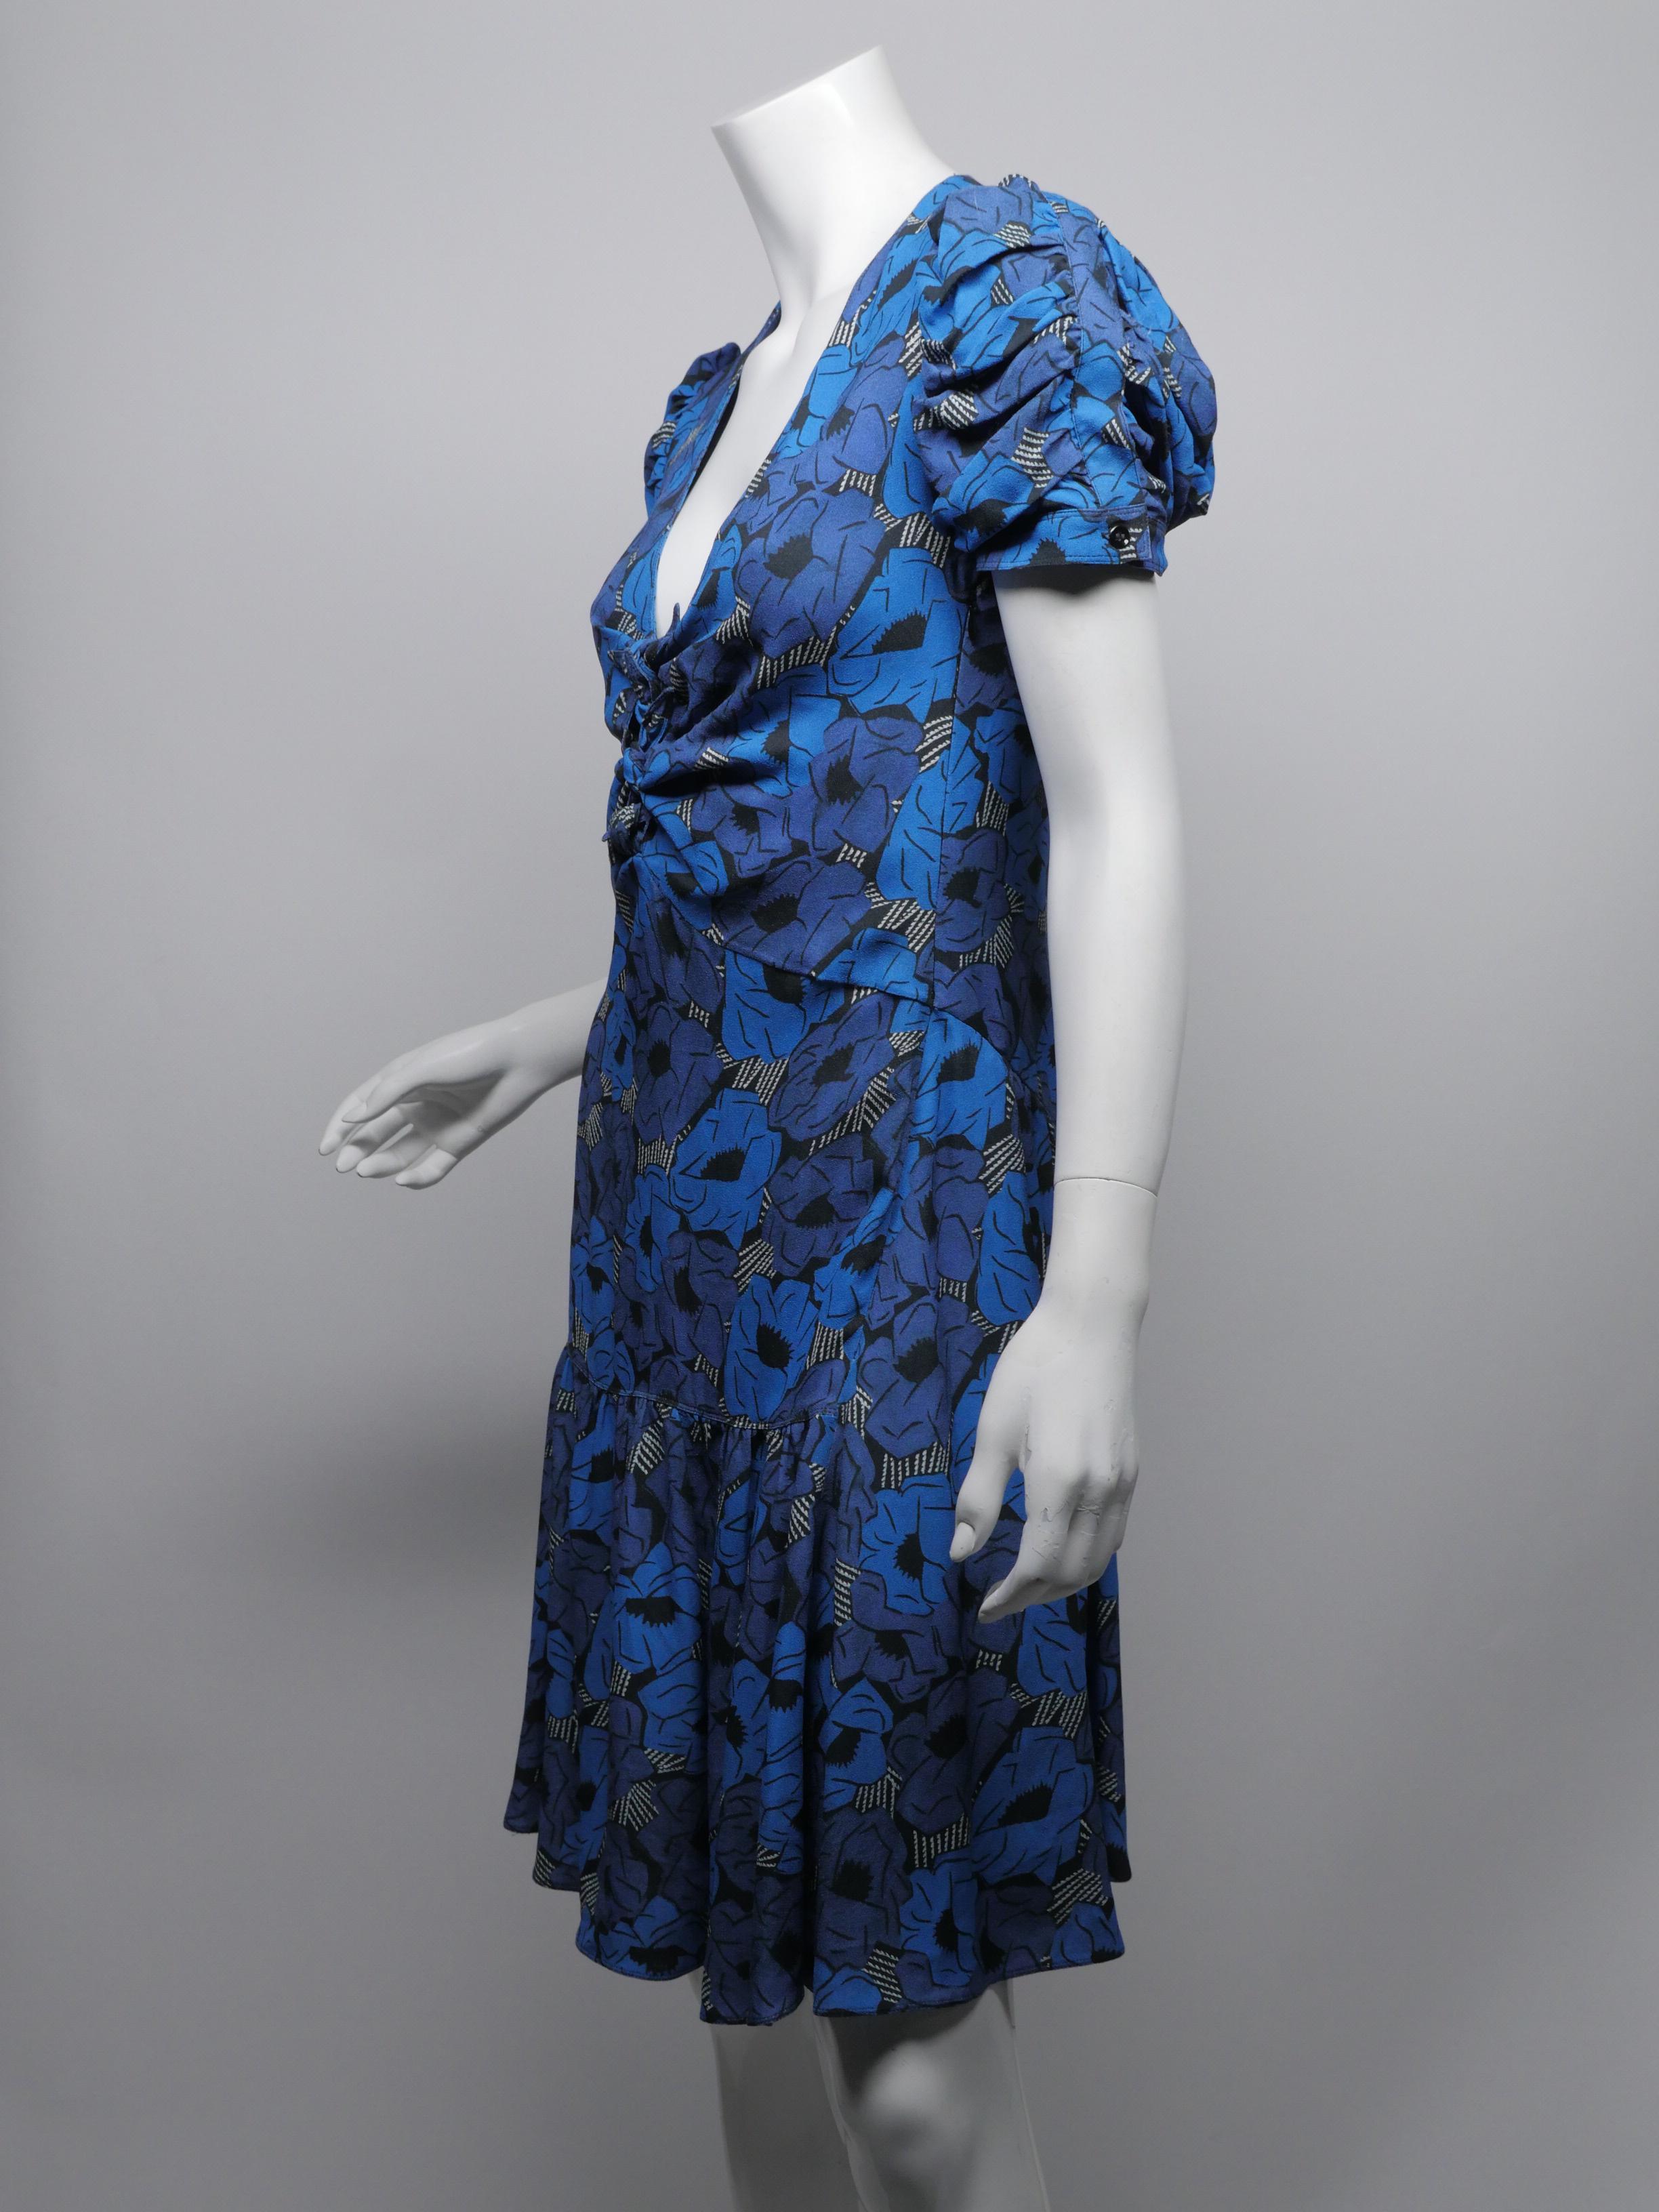 Yves Saint Laurent Size 38 Blue Floral Dress 1